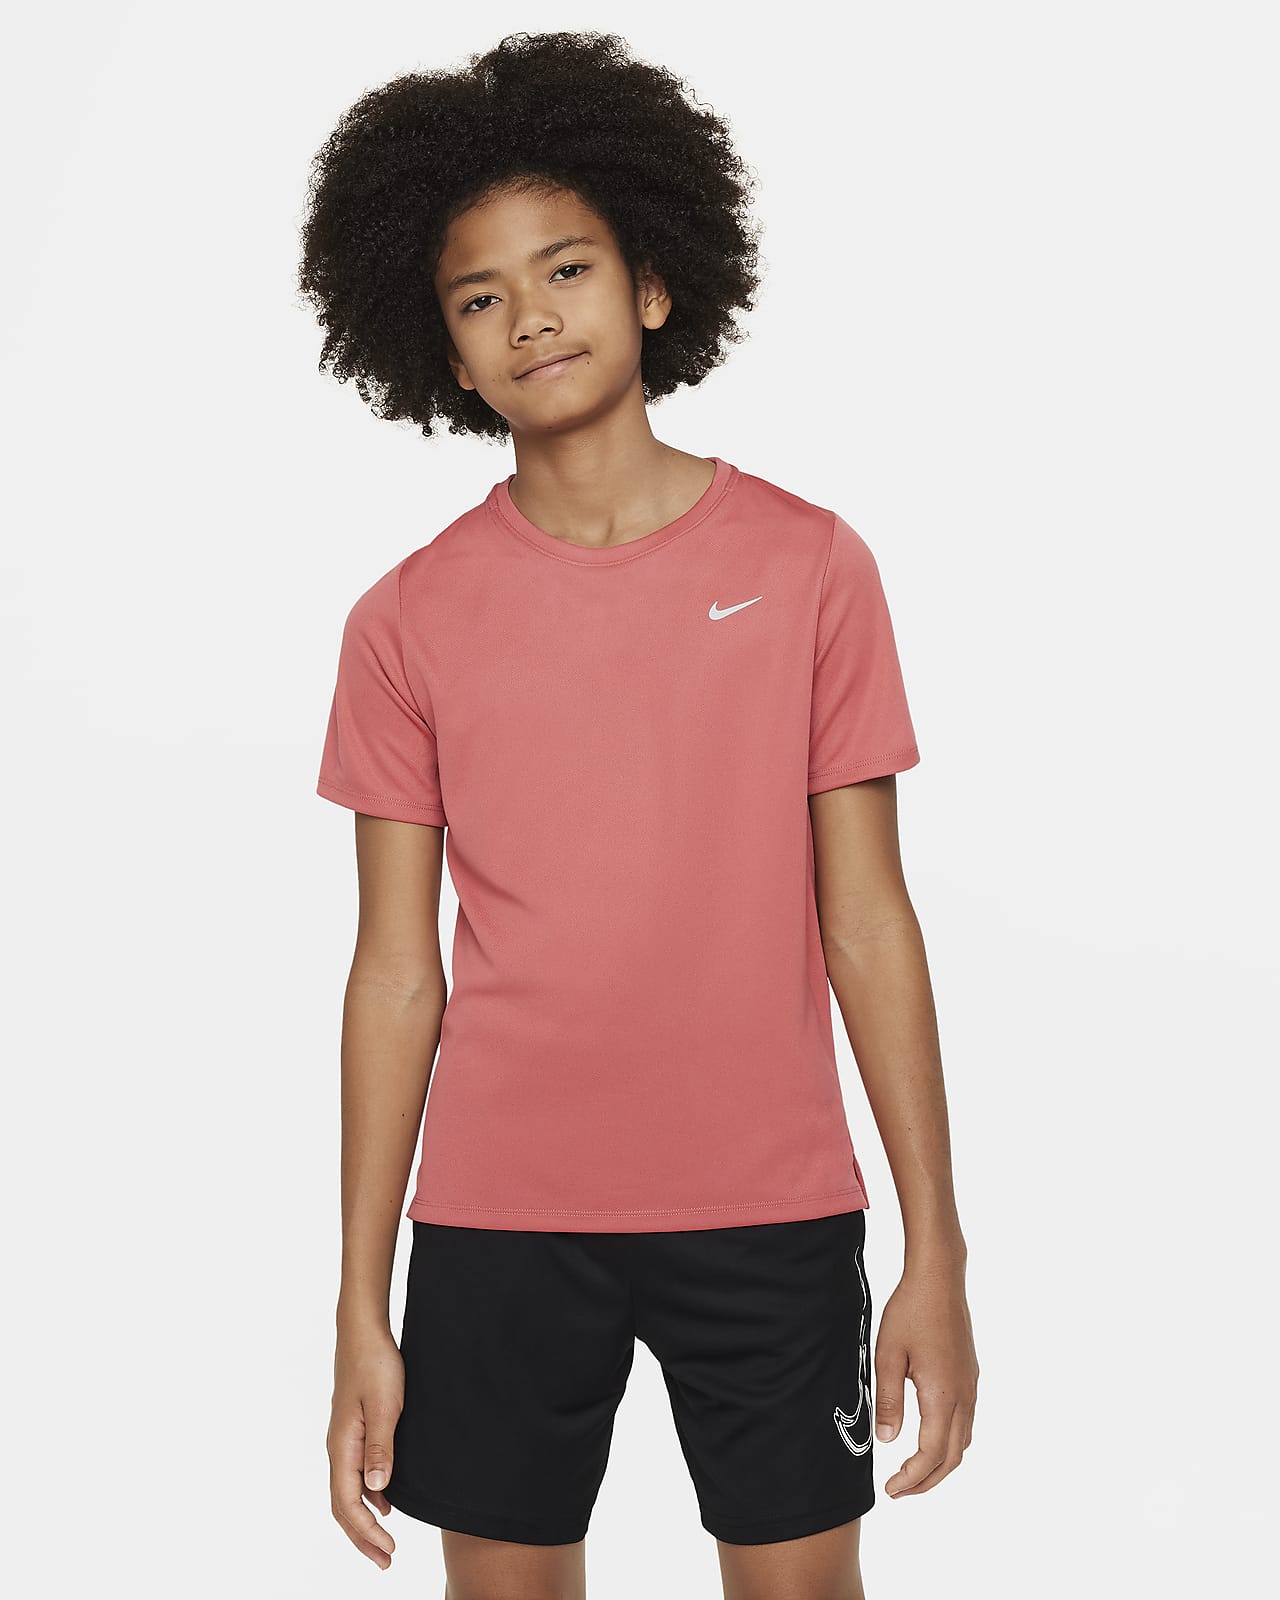 Κοντομάνικη μπλούζα προπόνησης Nike Dri-FIT Miler για μεγάλα αγόρια